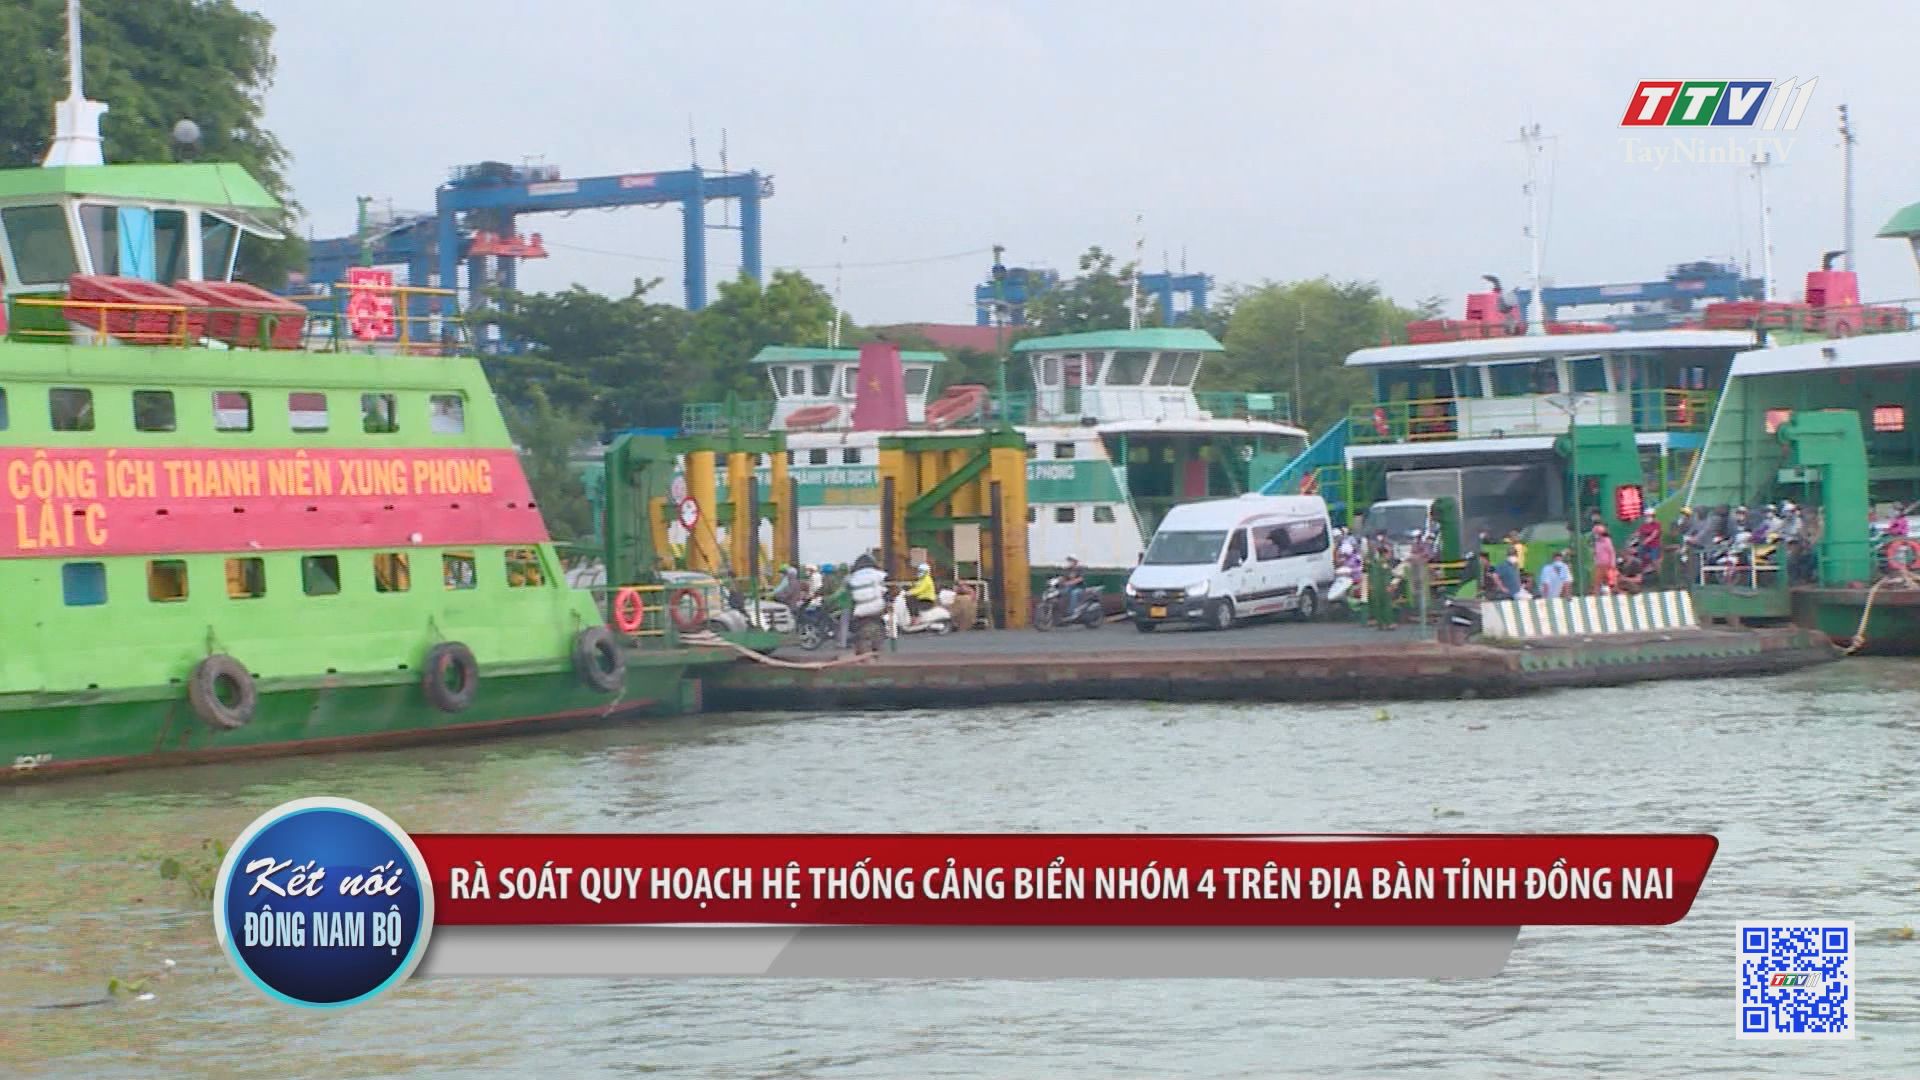 Rà soát quy hoạch hệ thống cảng biển nhóm 4 trên địa bản tỉnh Đồng Nai | KẾT NỐI ĐÔNG NAM BỘ | TayNinhTV